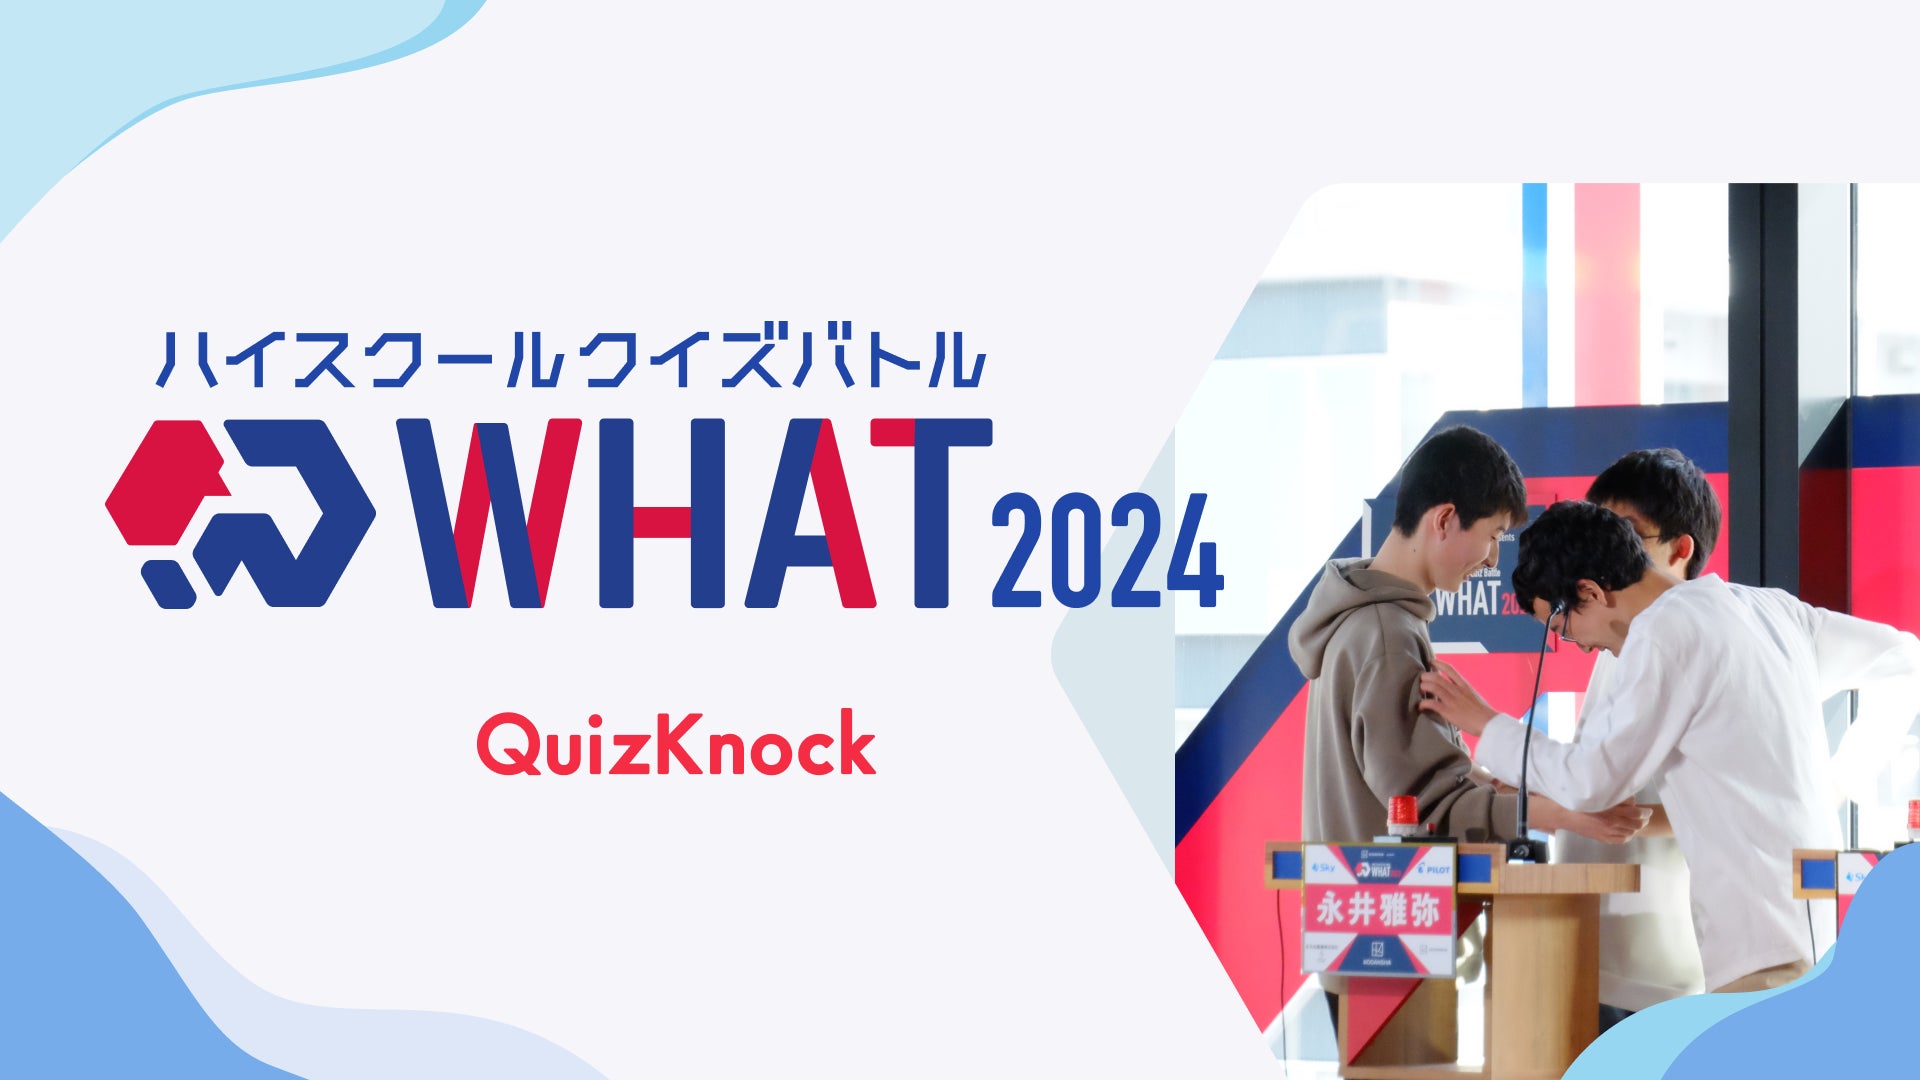 伊沢拓司率いるQuizKnockが高校生以下対象のクイズ大会を今年も開催！「ハイスクールクイズバトル WHAT 2024」は7月上旬よりエントリー開始予定